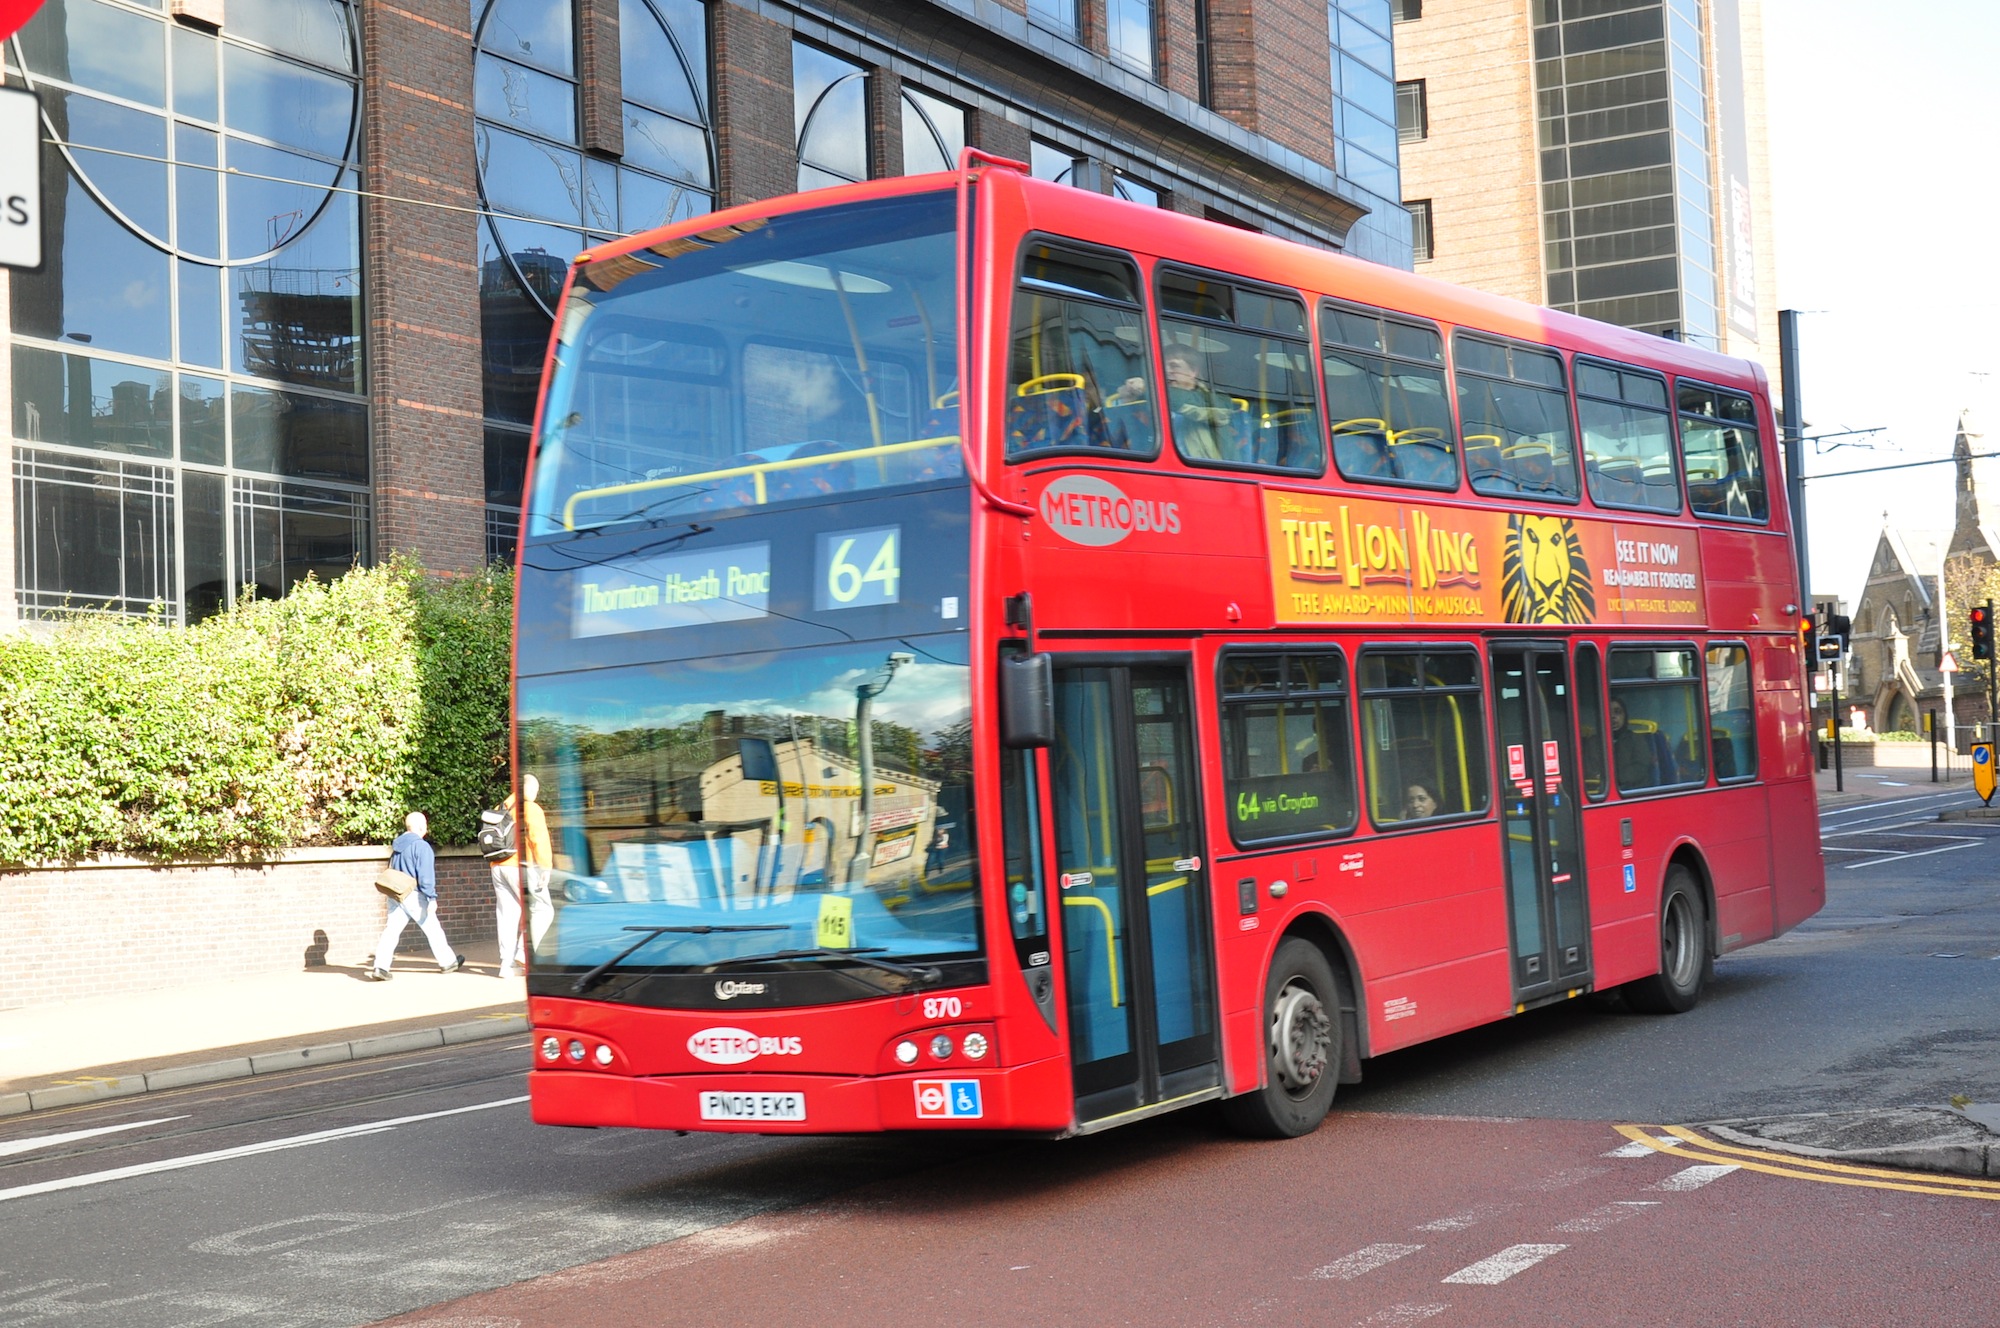 Metrobus 870